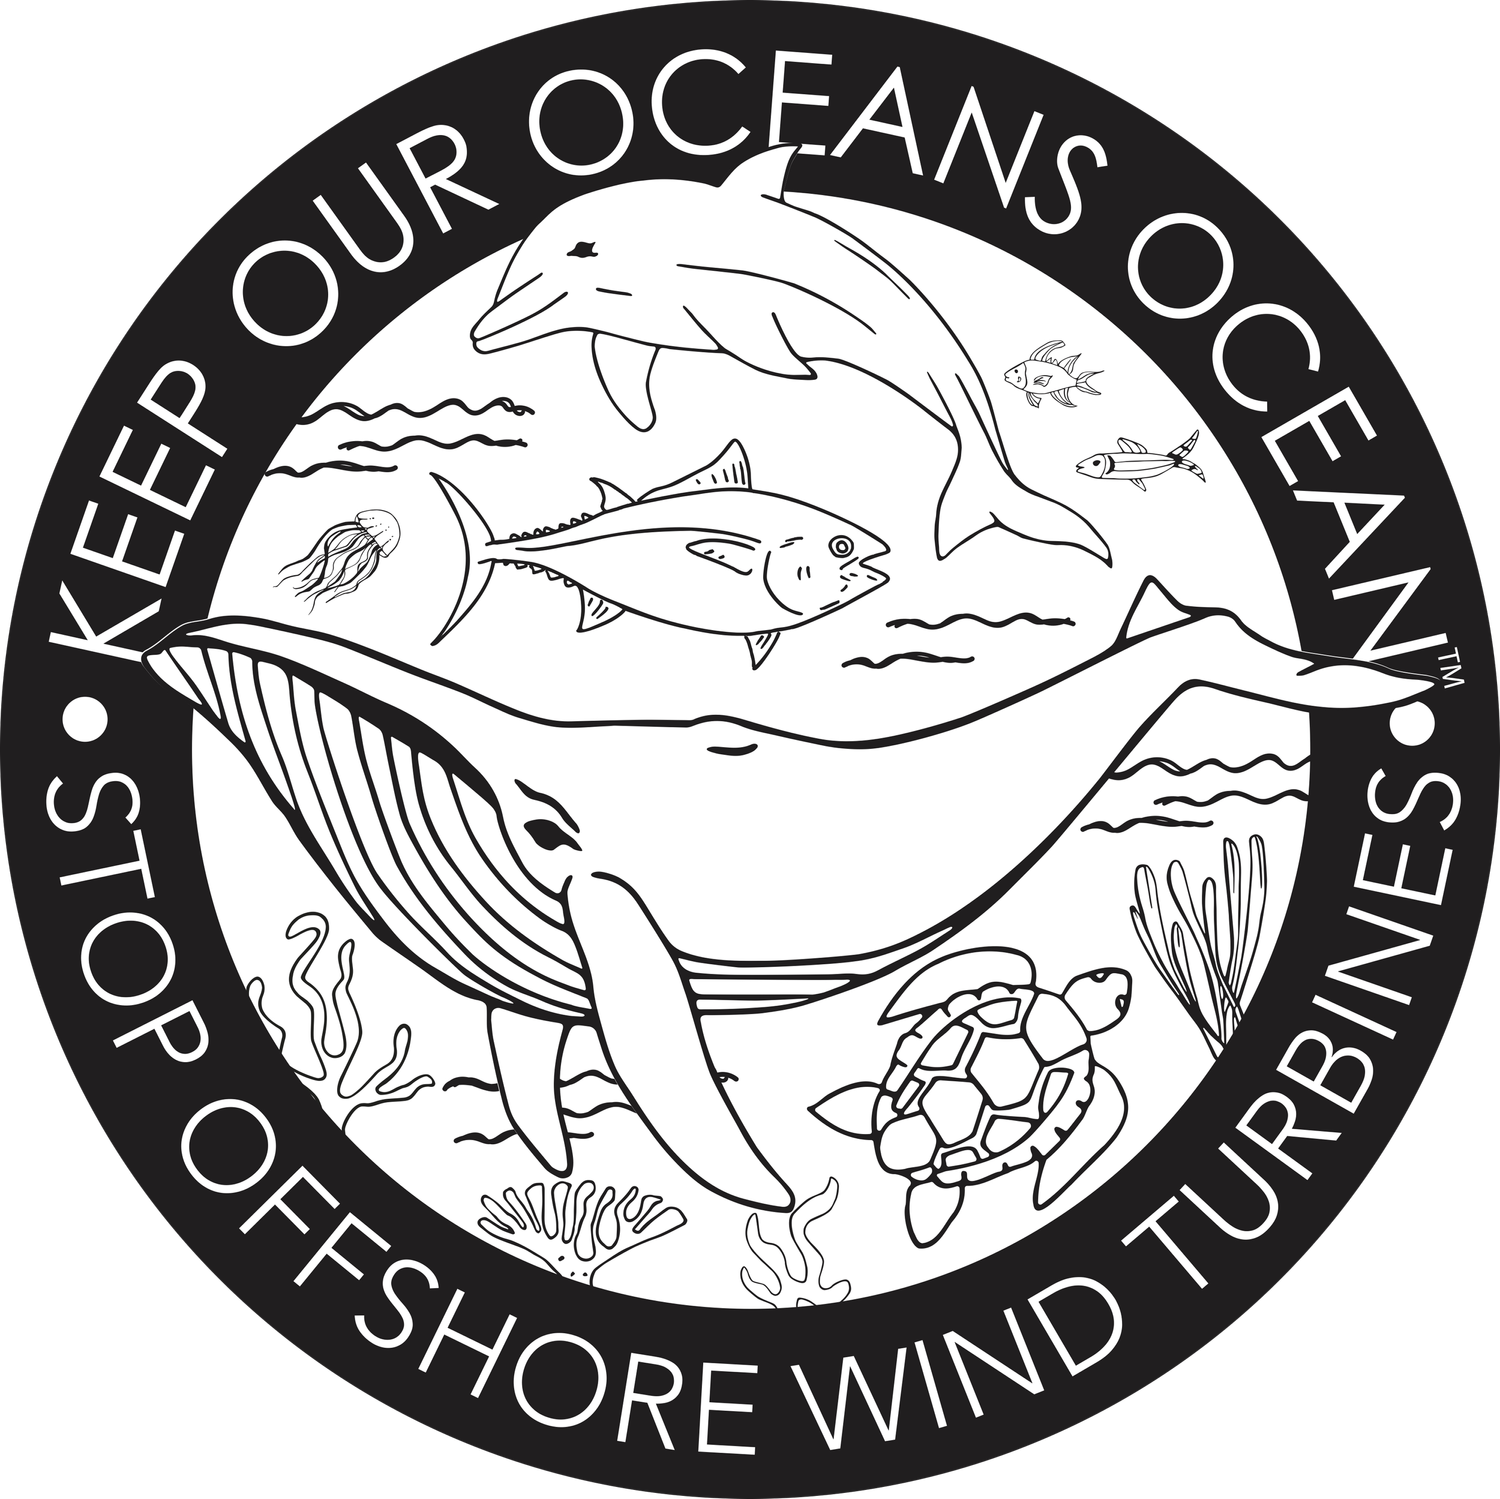 Keep Our Oceans Ocean